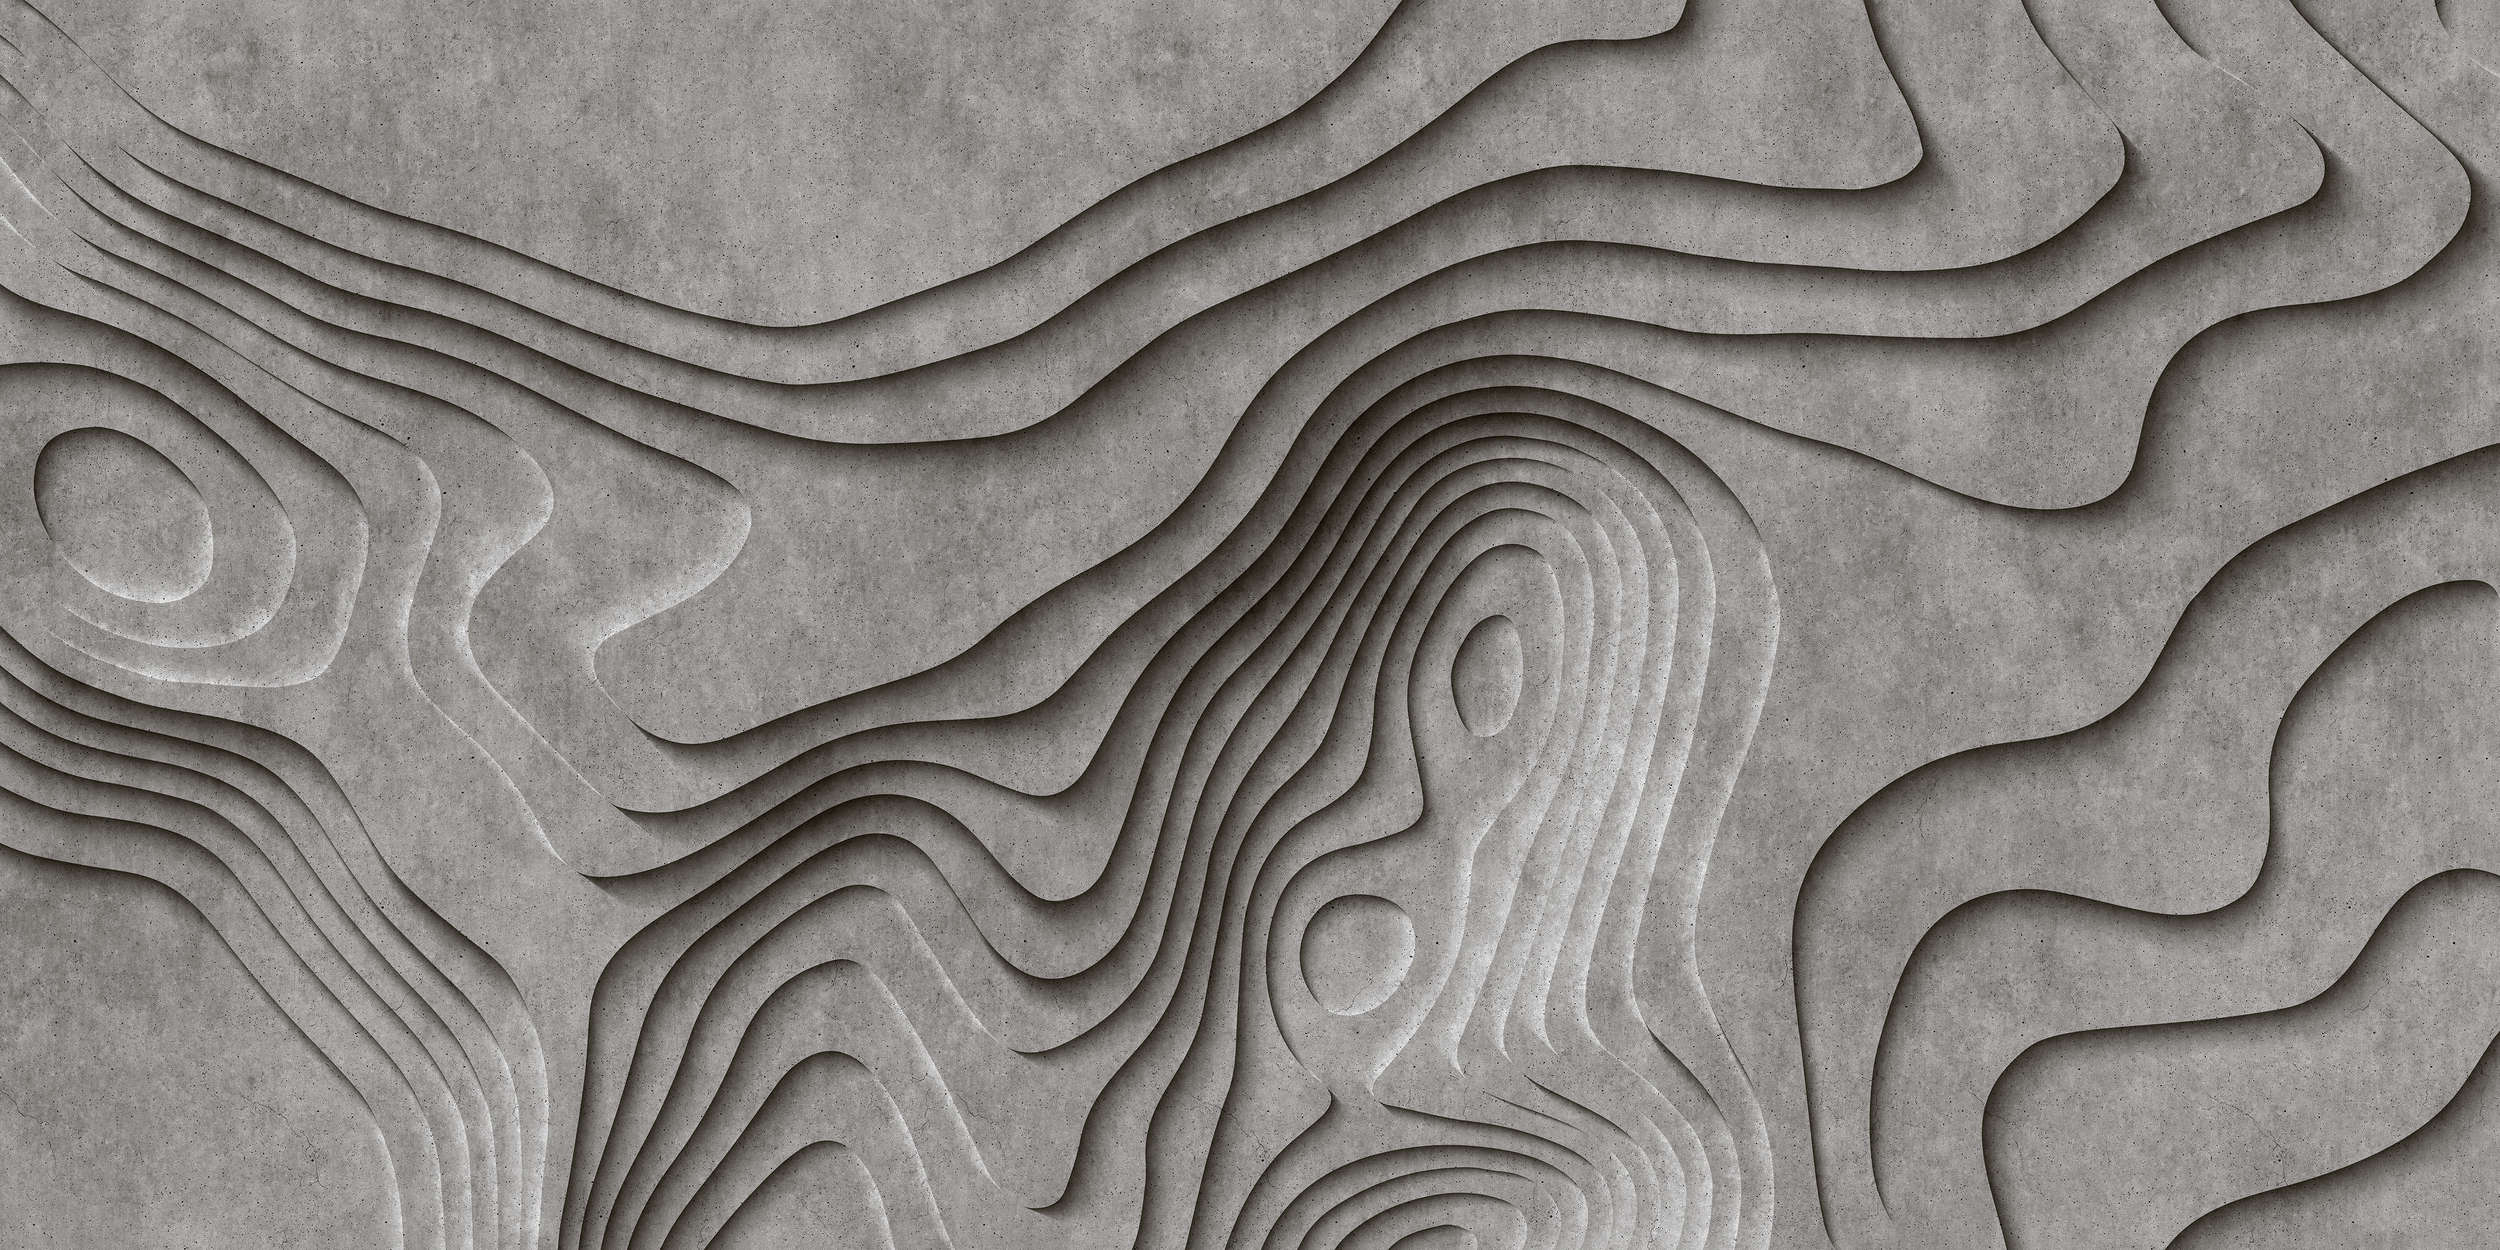             Canyon 1 - Cool 3D Concrete Canyon Wallpaper - Grey, Black | Premium Smooth Non-woven
        